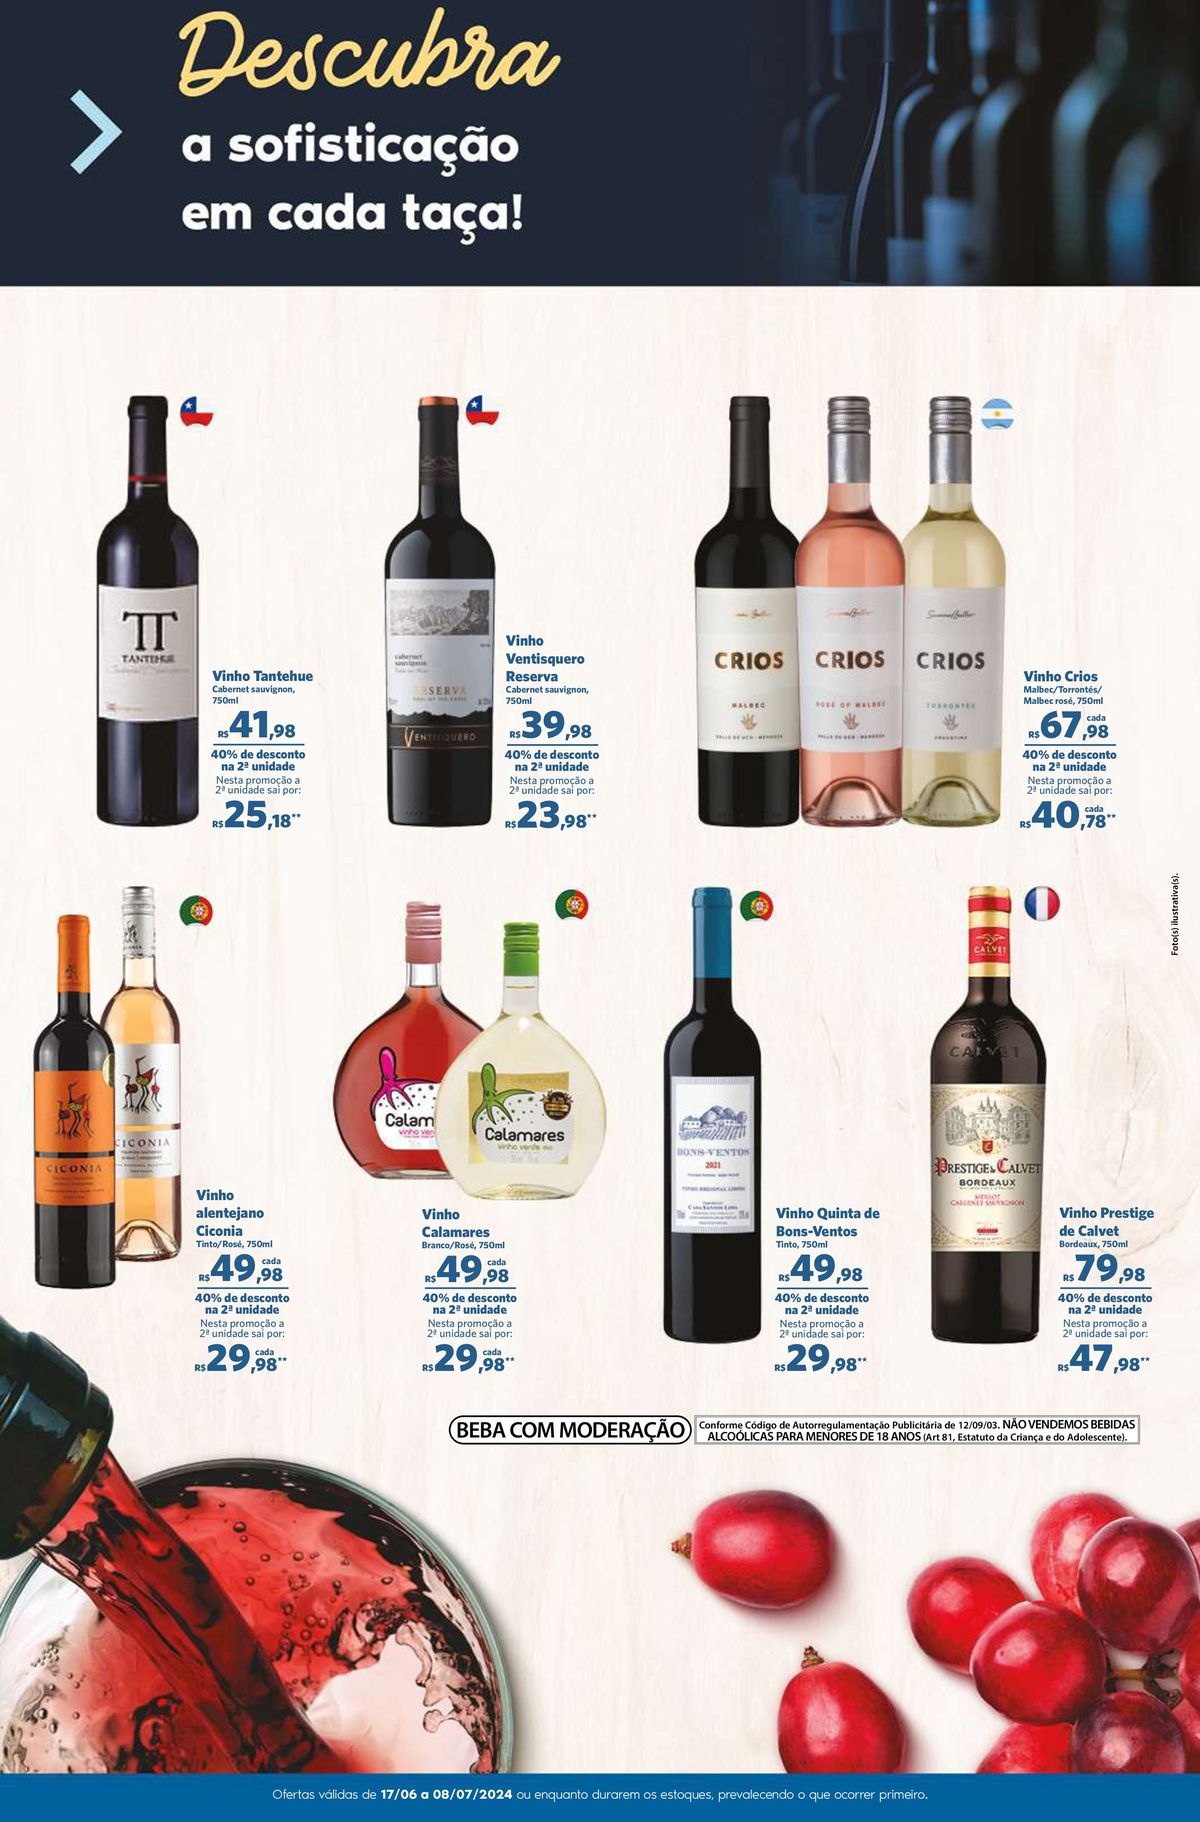 Vinho Ventisquero CRIOS com 40% de desconto e outras ofertas imperdíveis!